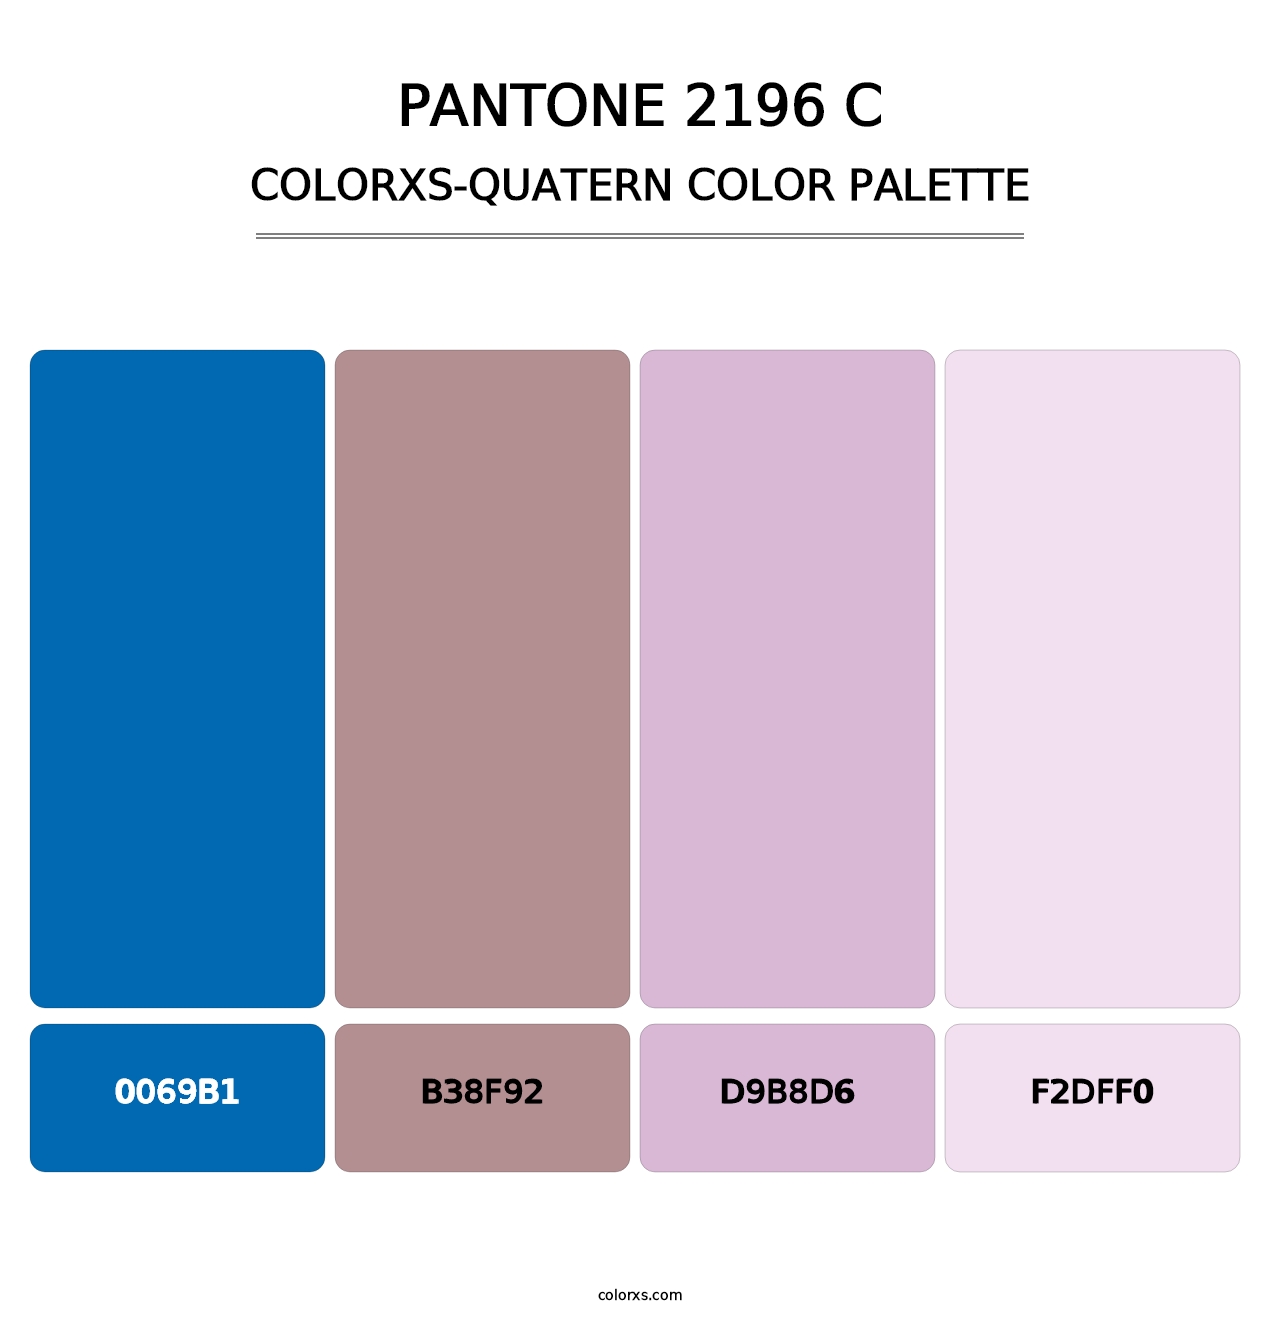 PANTONE 2196 C - Colorxs Quatern Palette